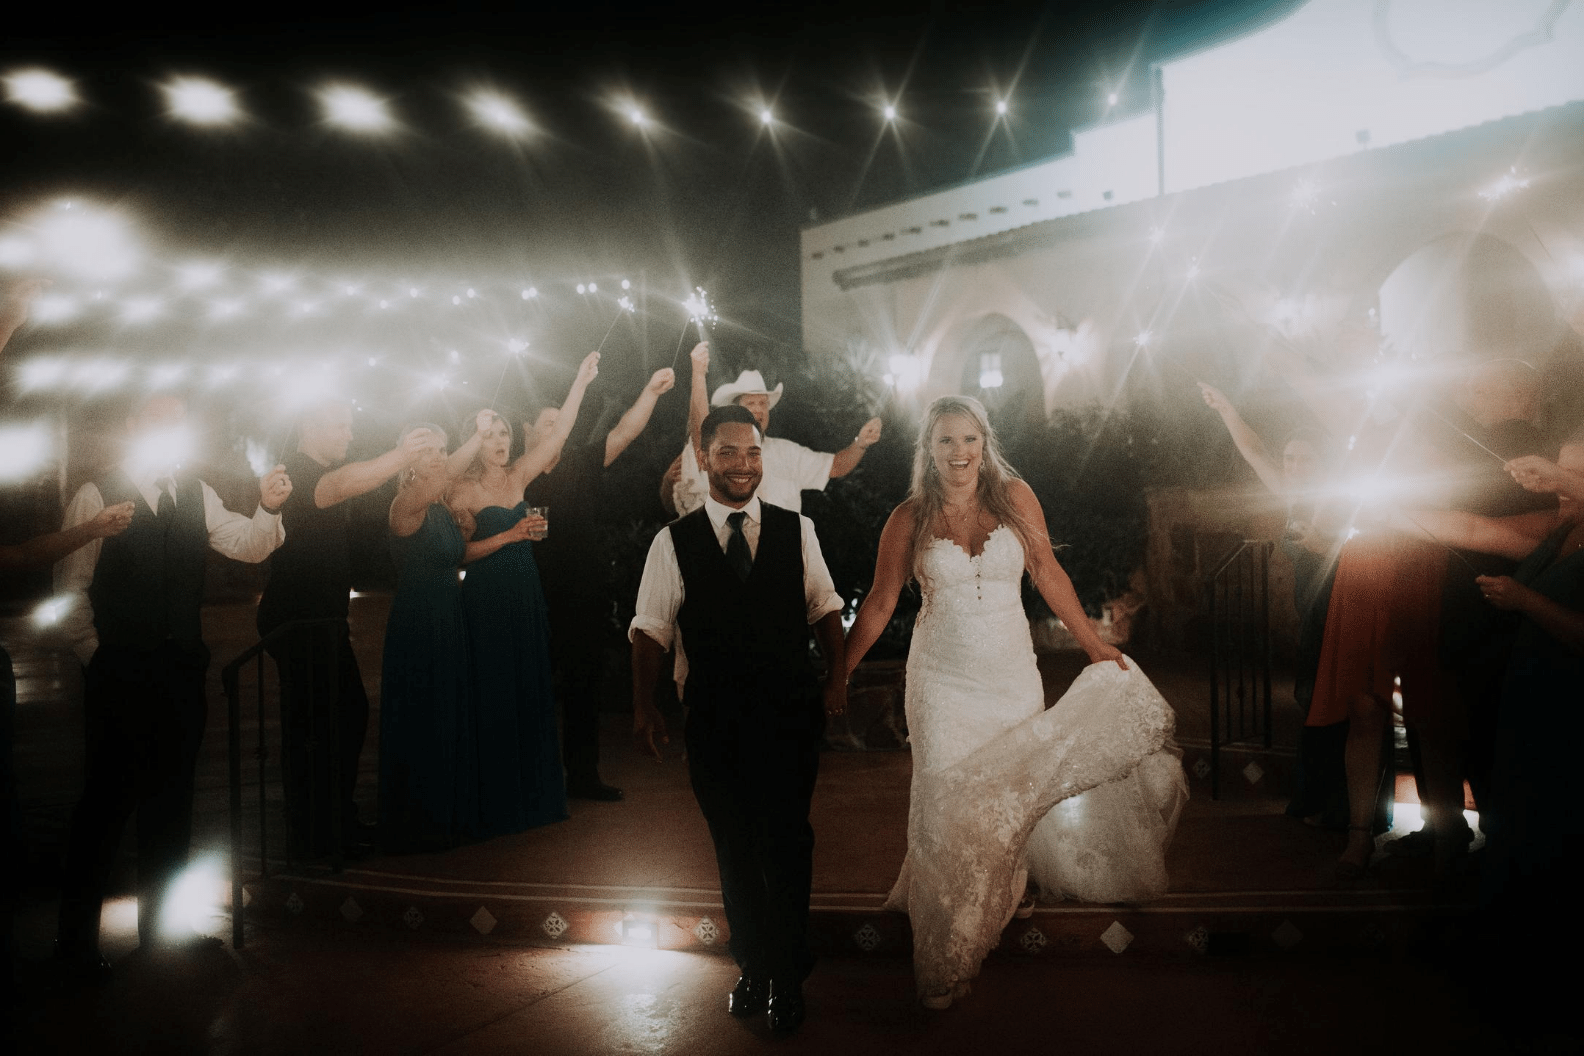 Outdoor Wedding Ceremony in Conroe, TX | Carissa & Allen's Celebration